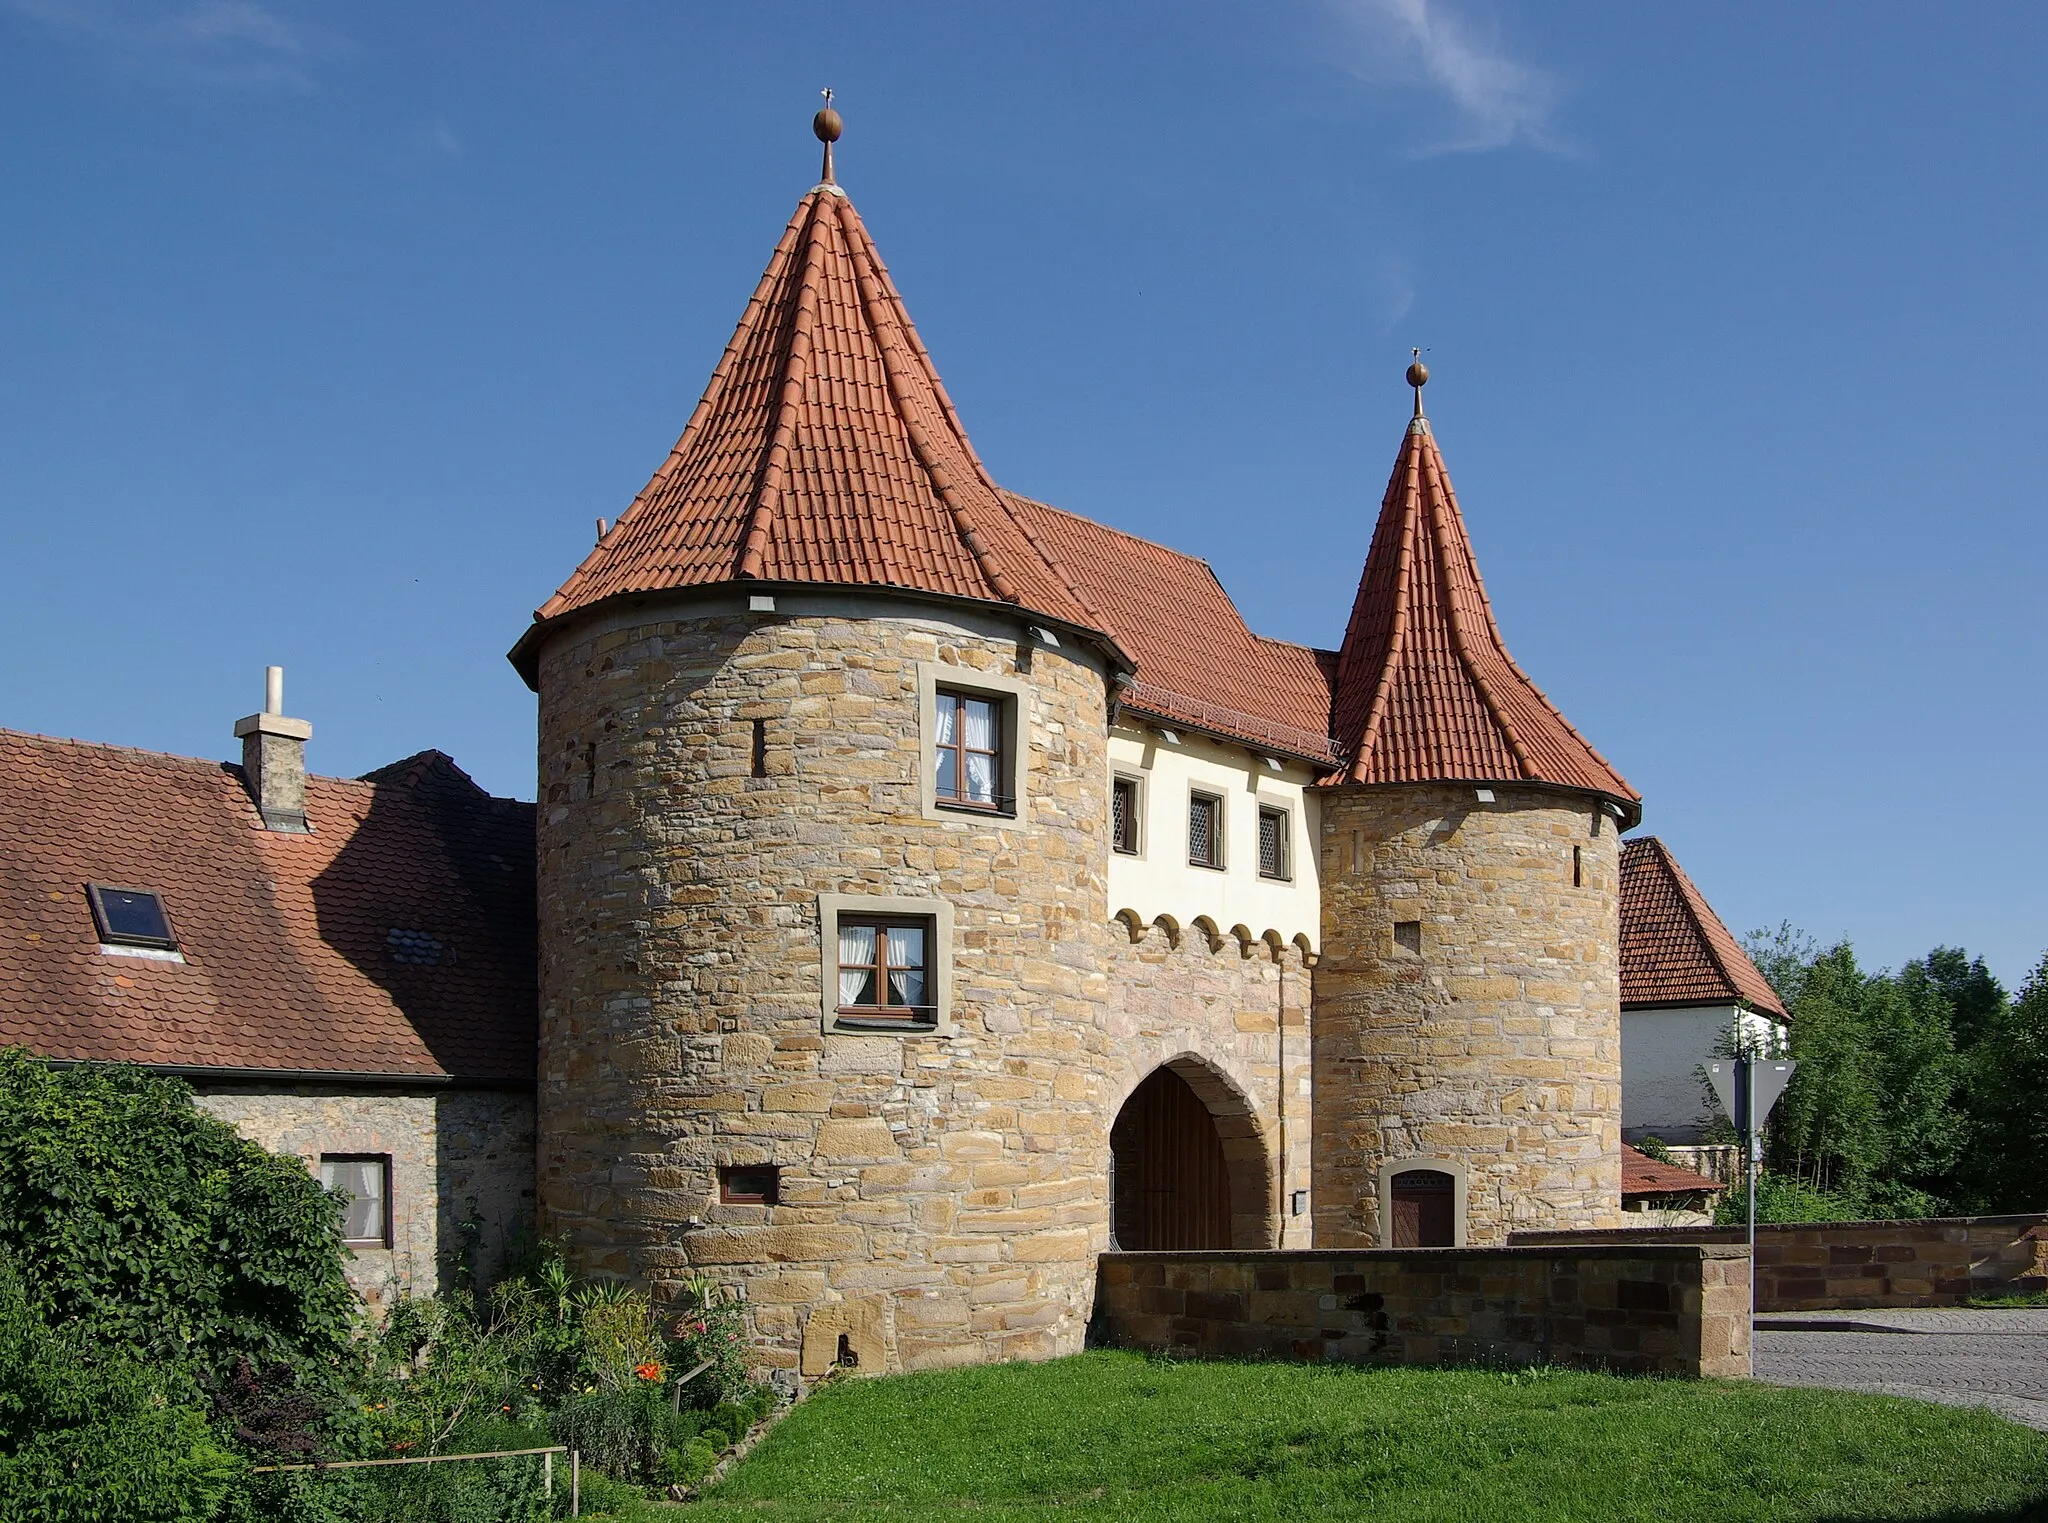 Image of Prichsenstadt